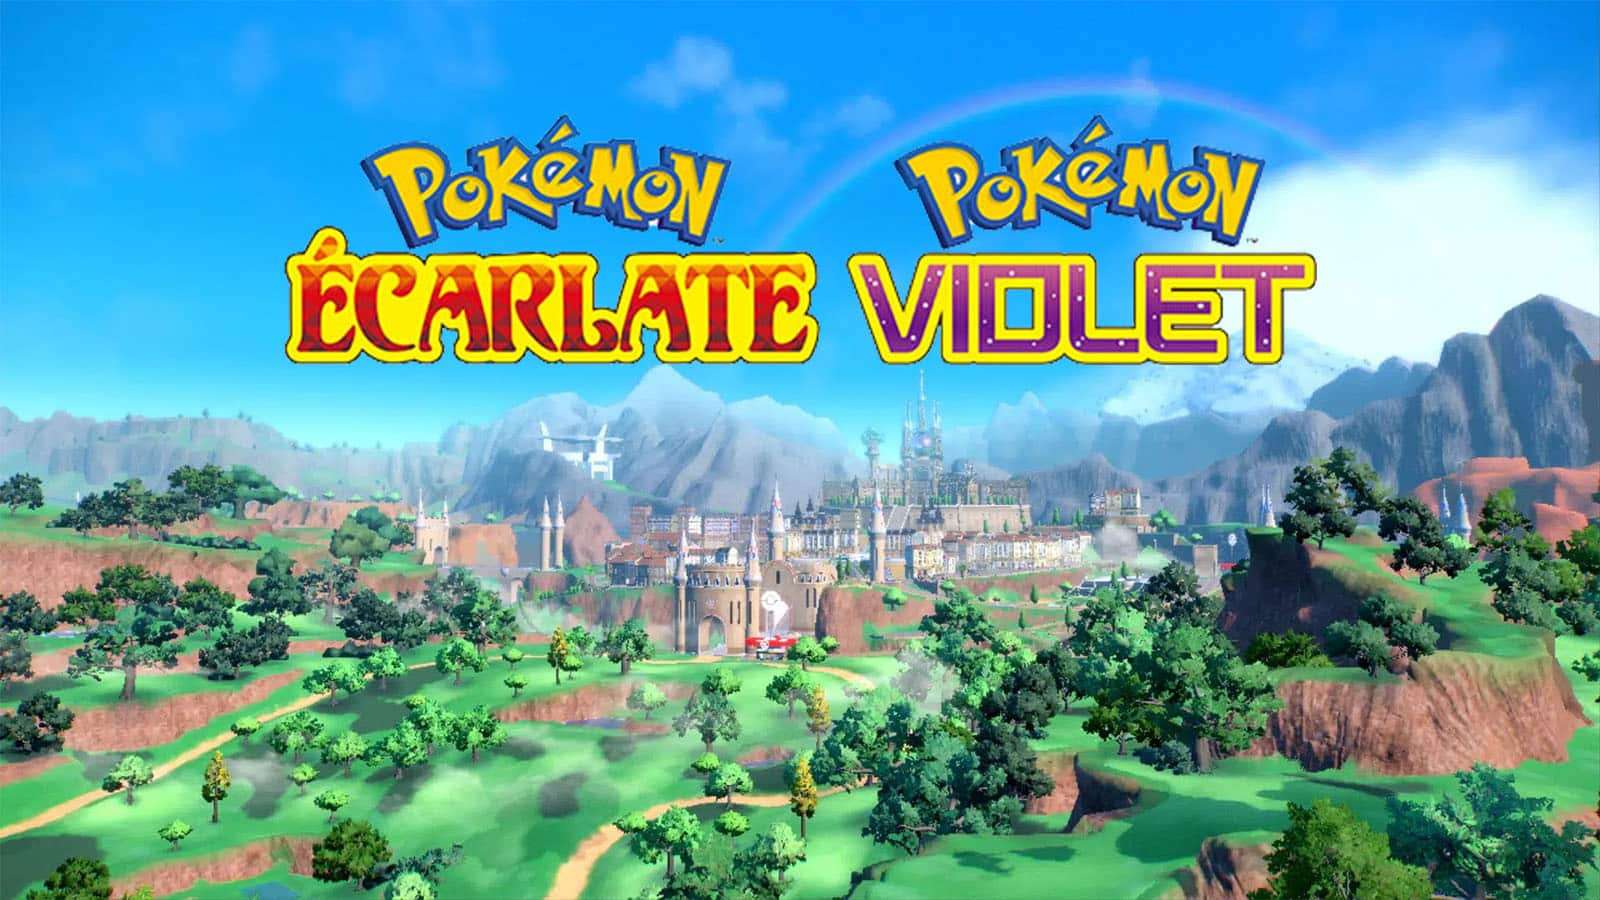 Pokémon Écarlate violet région espagne